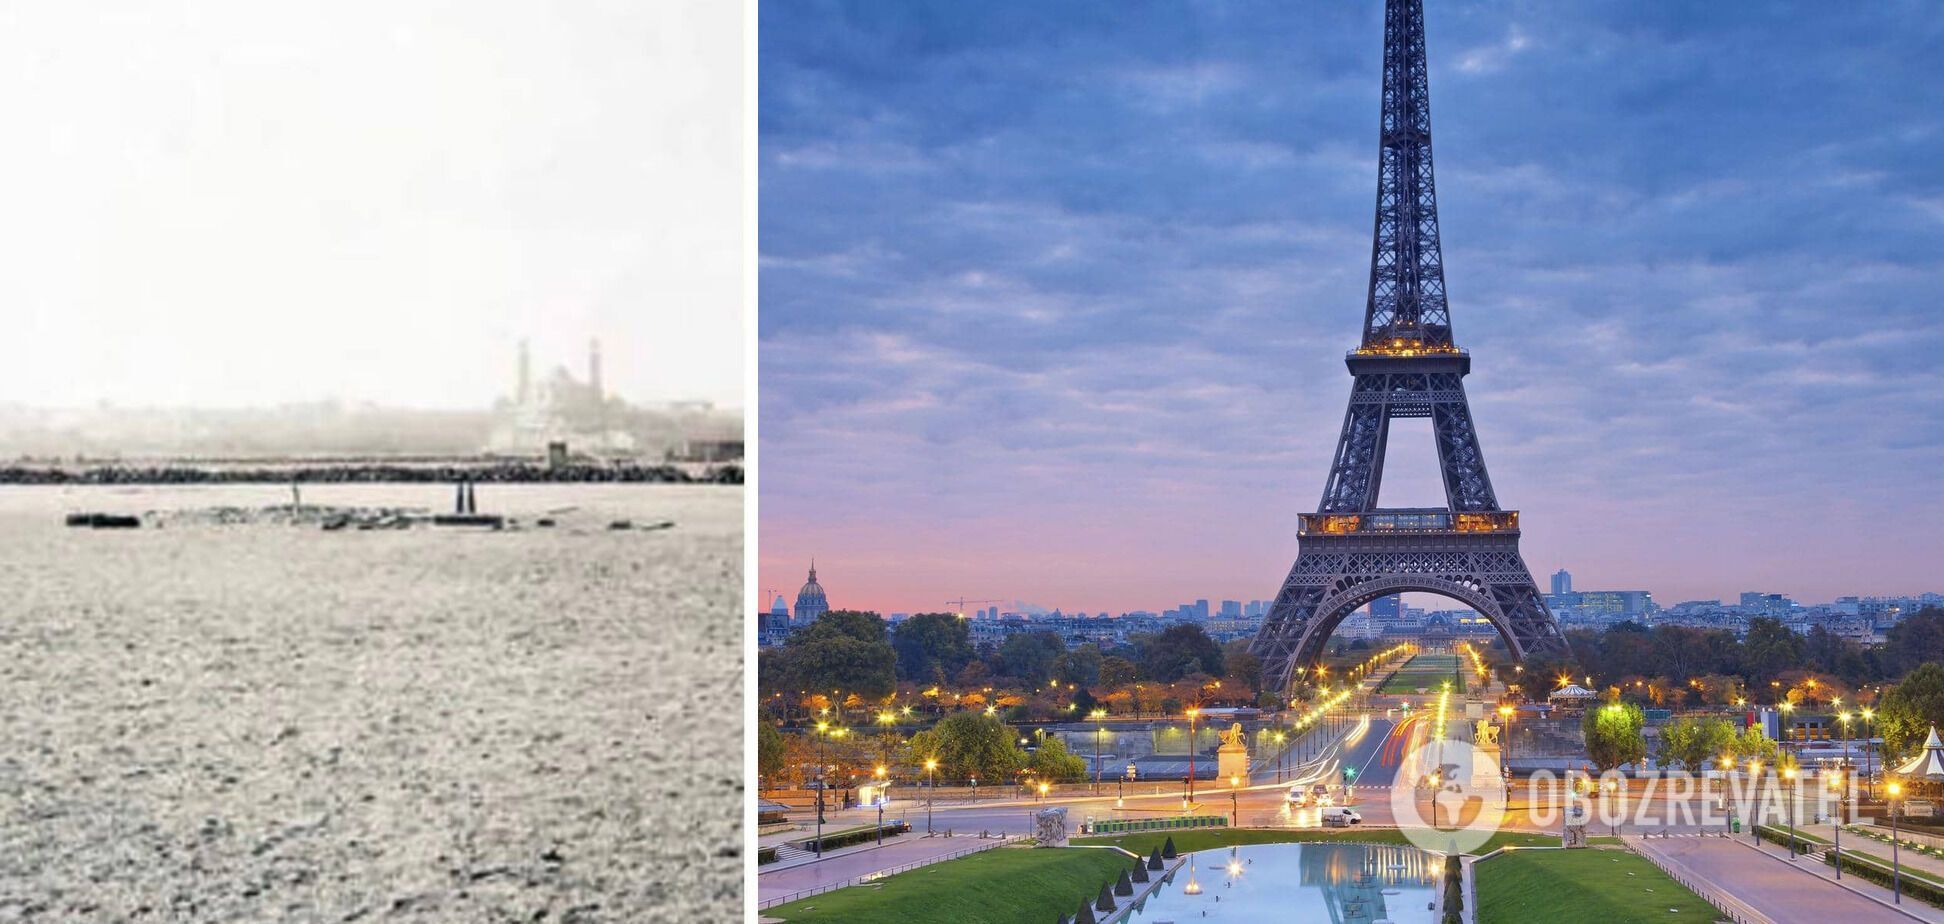  Марсове поле у Парижі до і після будівництва Ейфелевої вежі